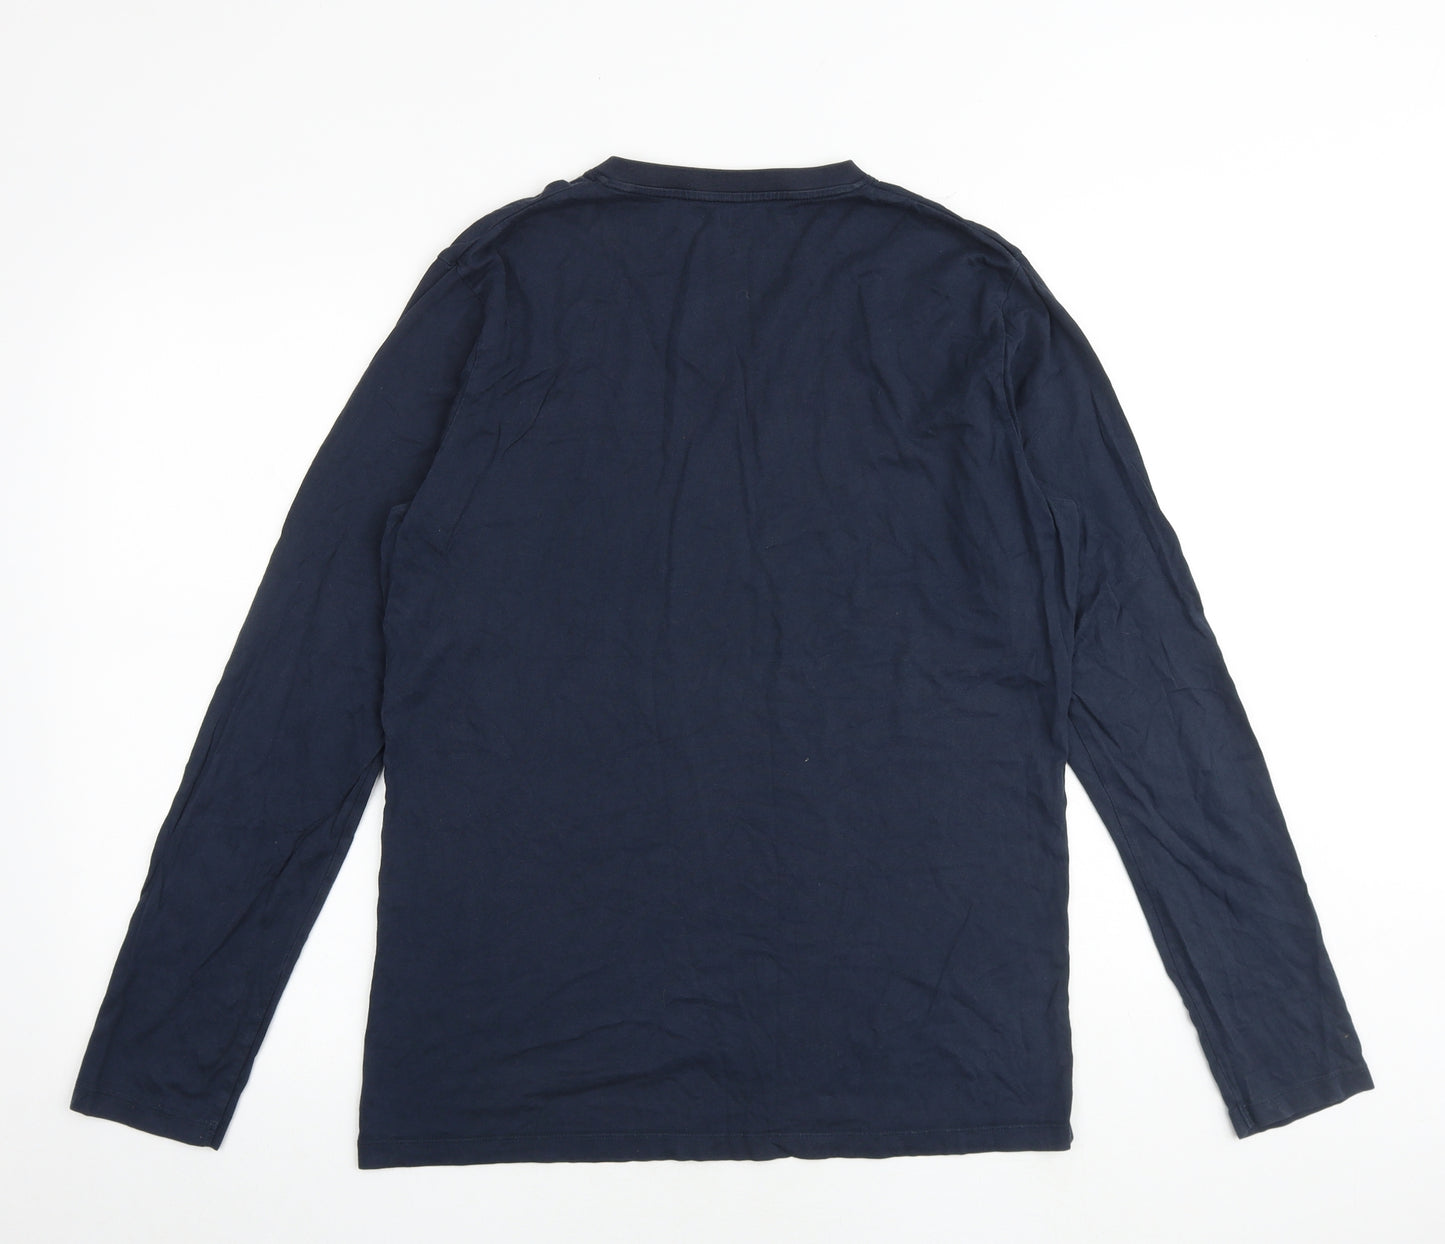 Marks and Spencer Mens Blue Cotton T-Shirt Size M V-Neck - Heatgen